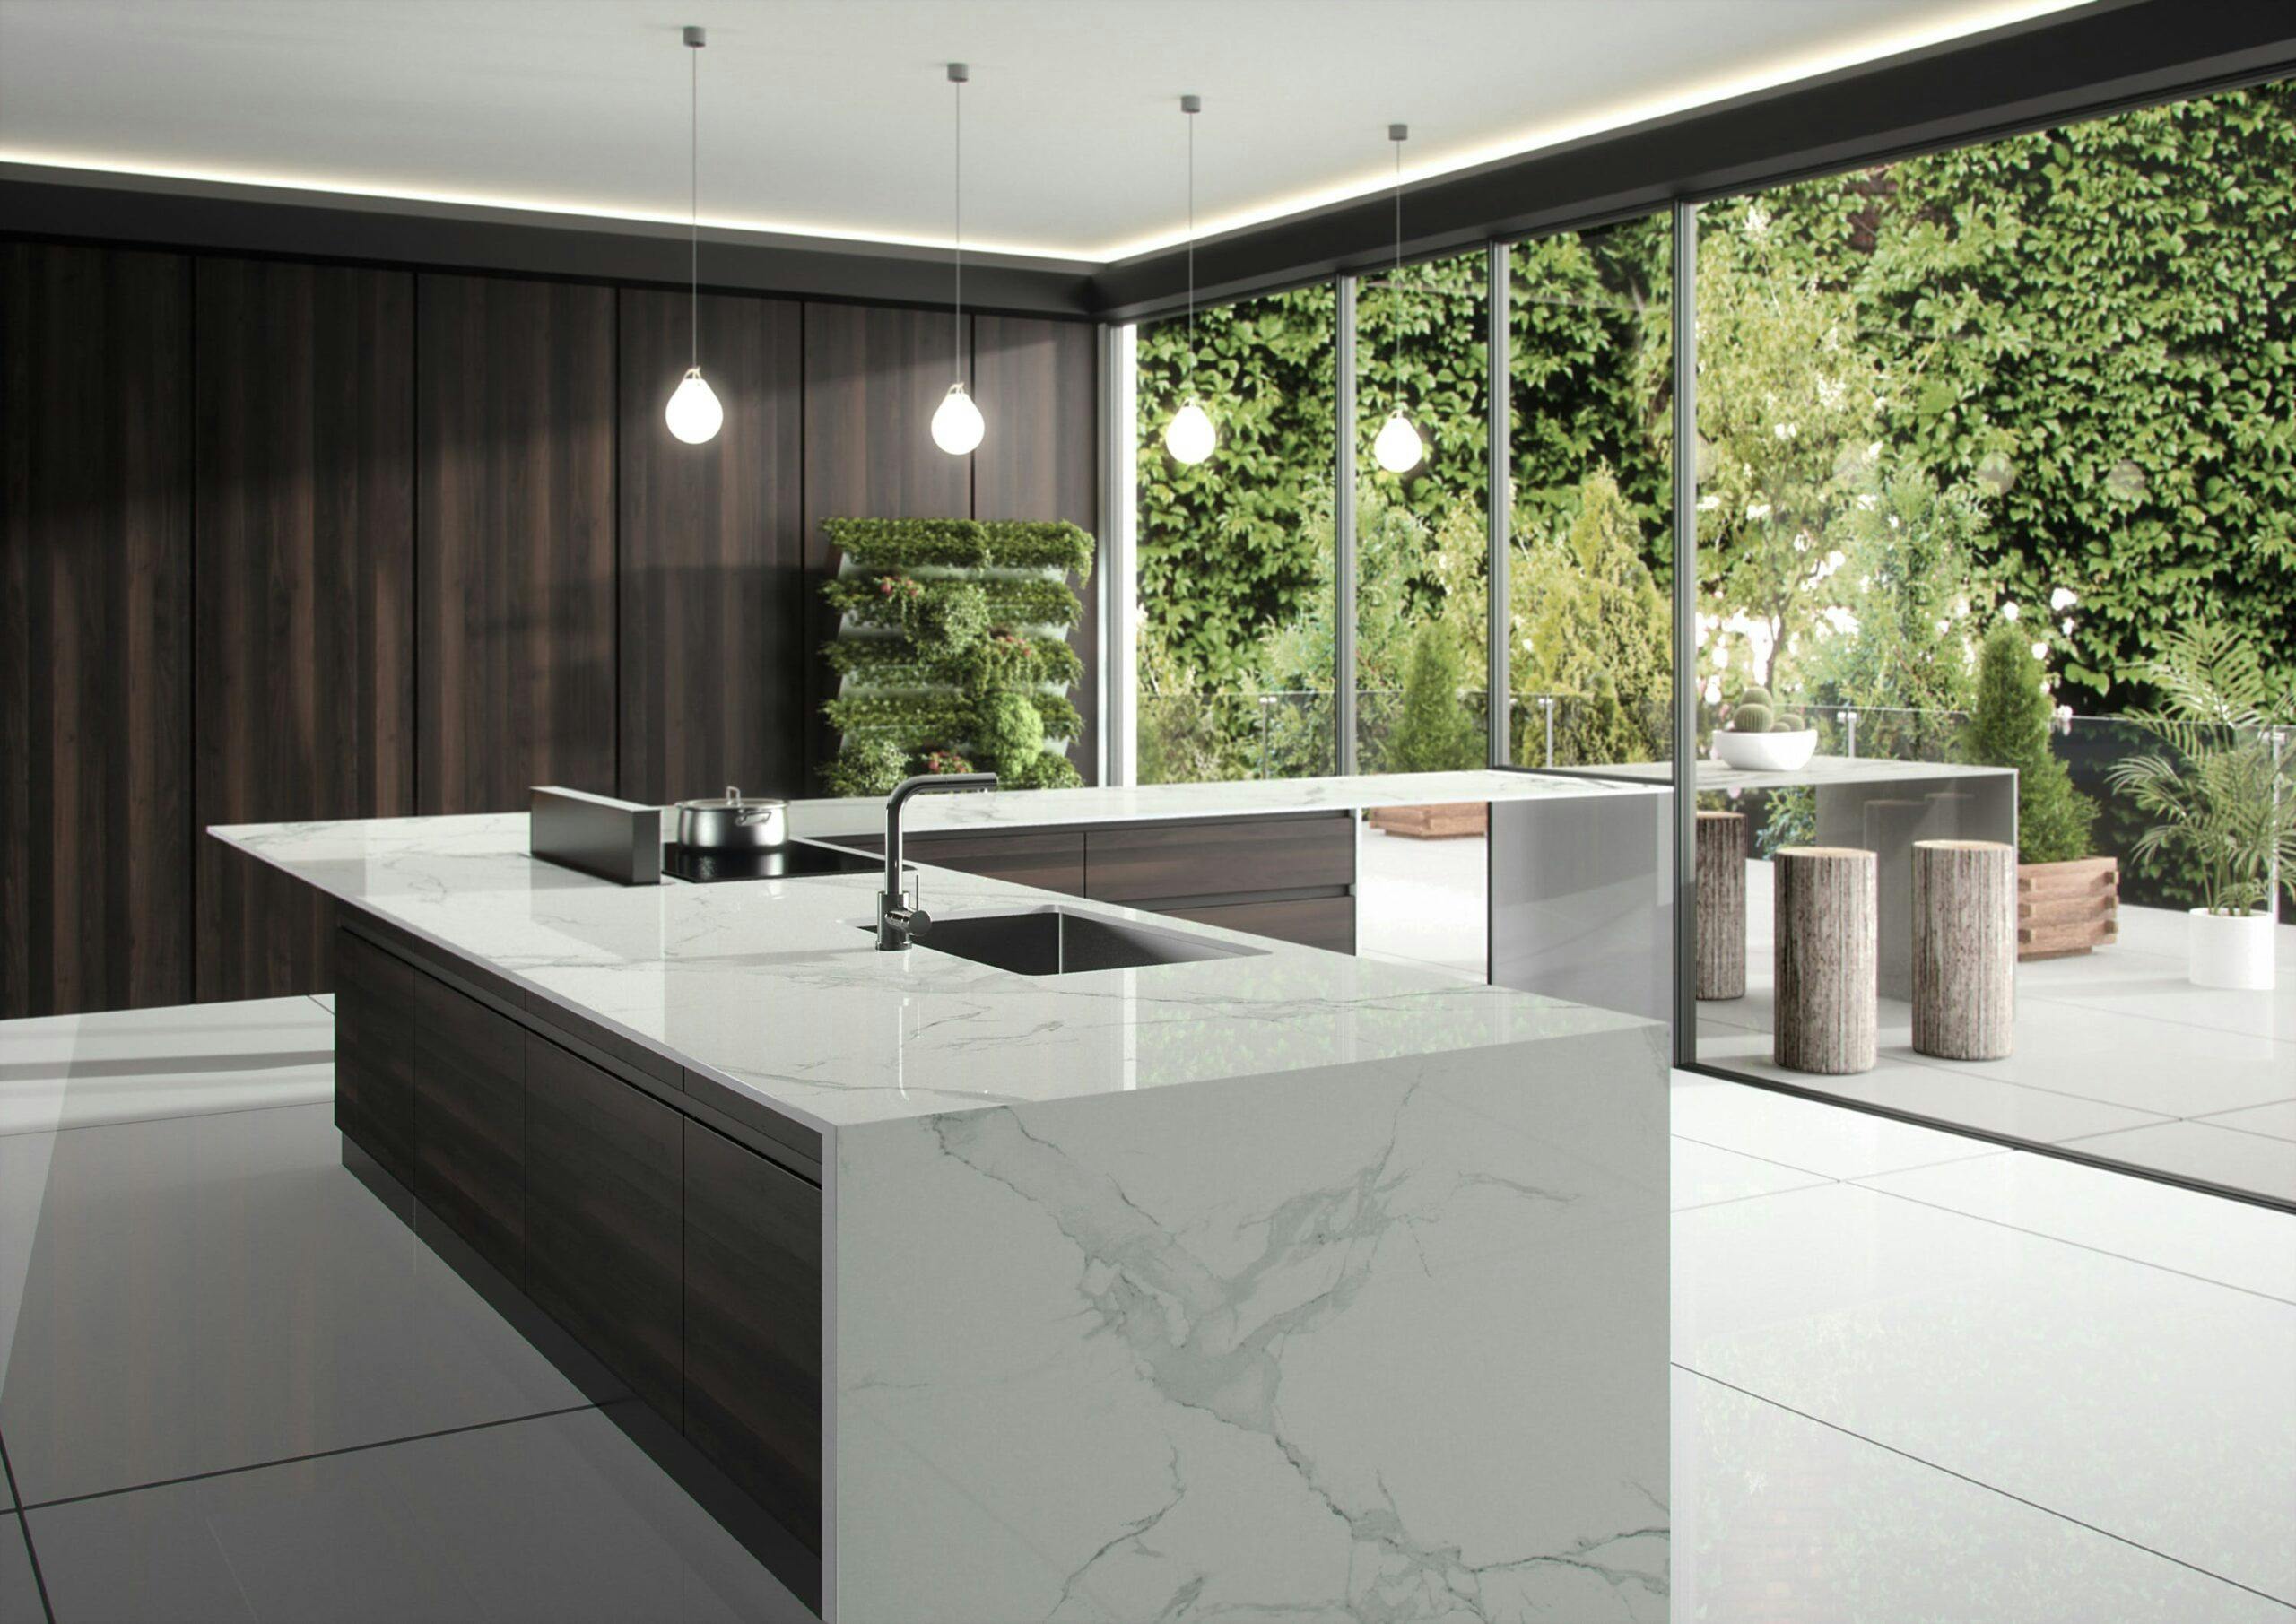 Image 34 of Dekton Natura kitchen countertop LR 5 scaled in Dekton® by Cosentino Introduces Opera and Natura - Cosentino